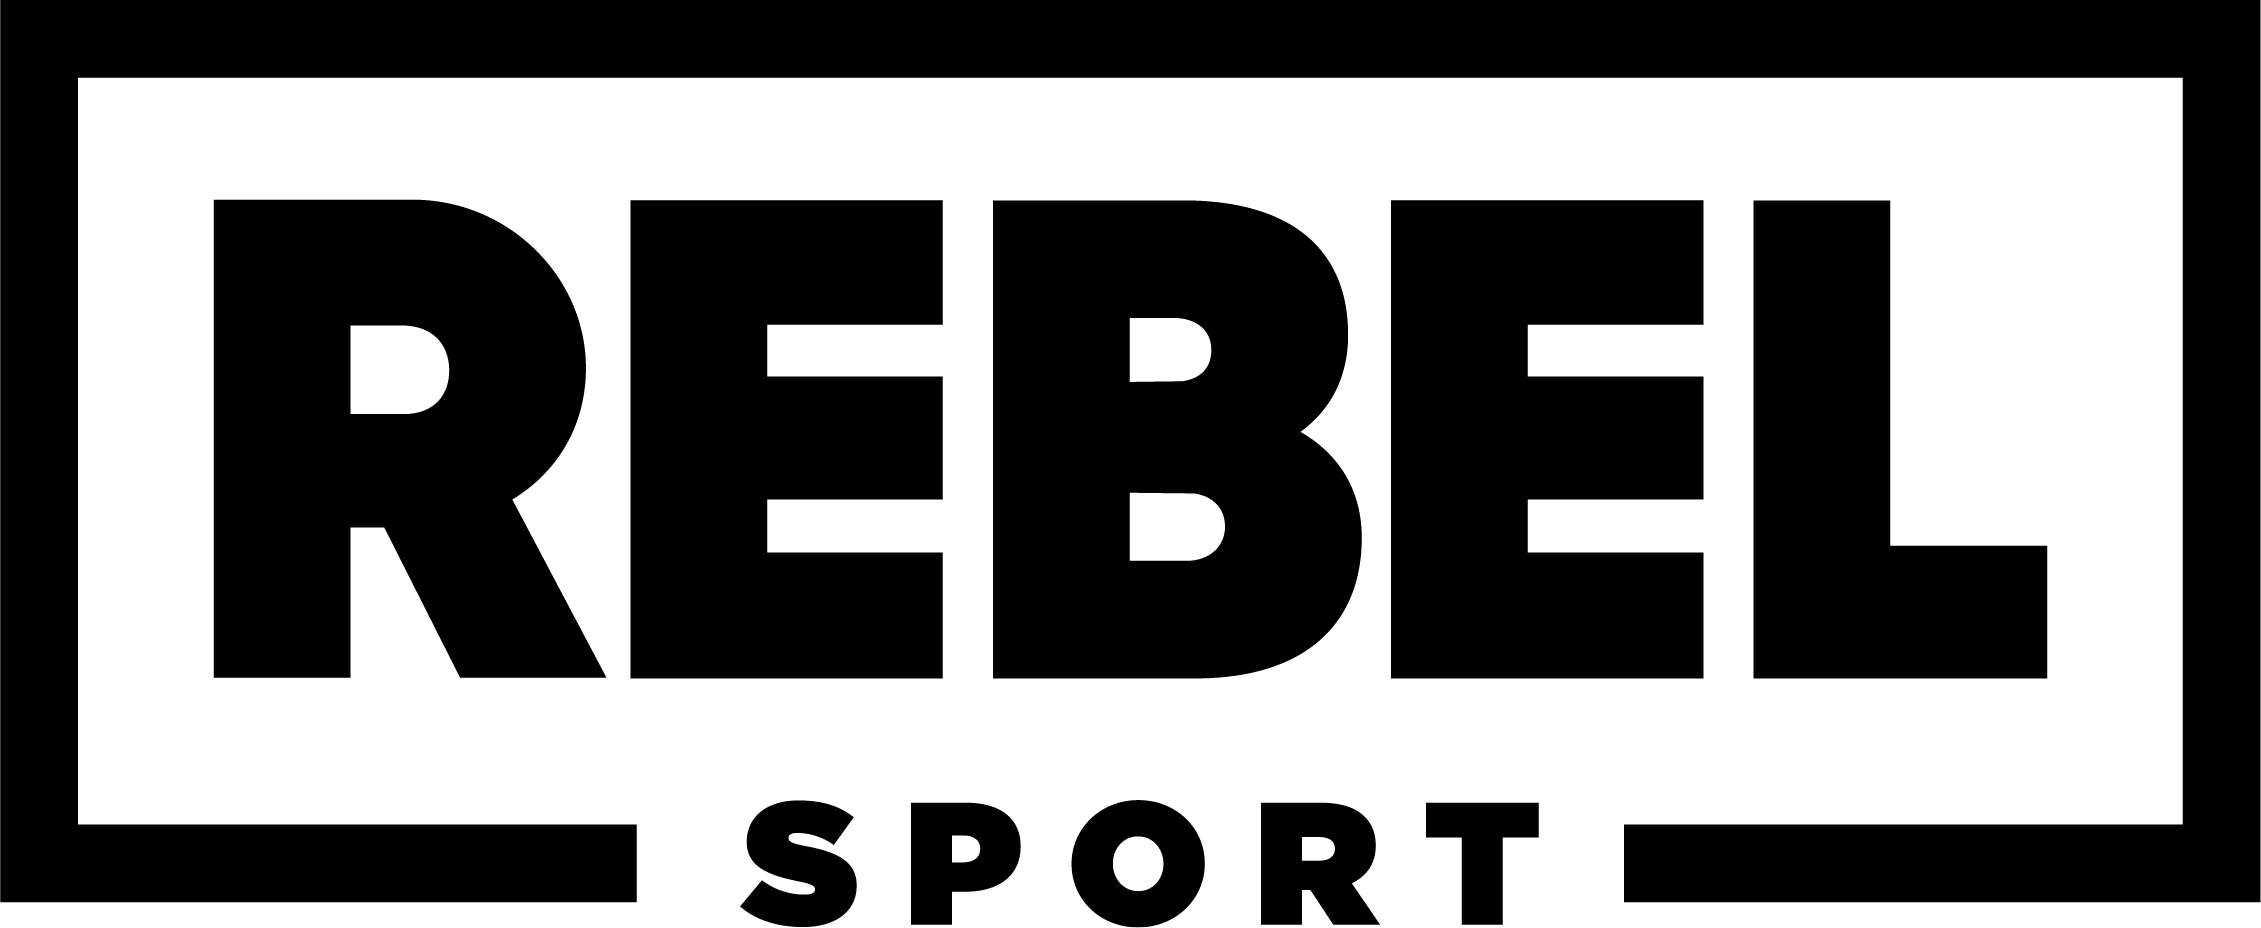 Rebel Sport NZ - PUMA NZ Untamed is here 🔥 The perfect